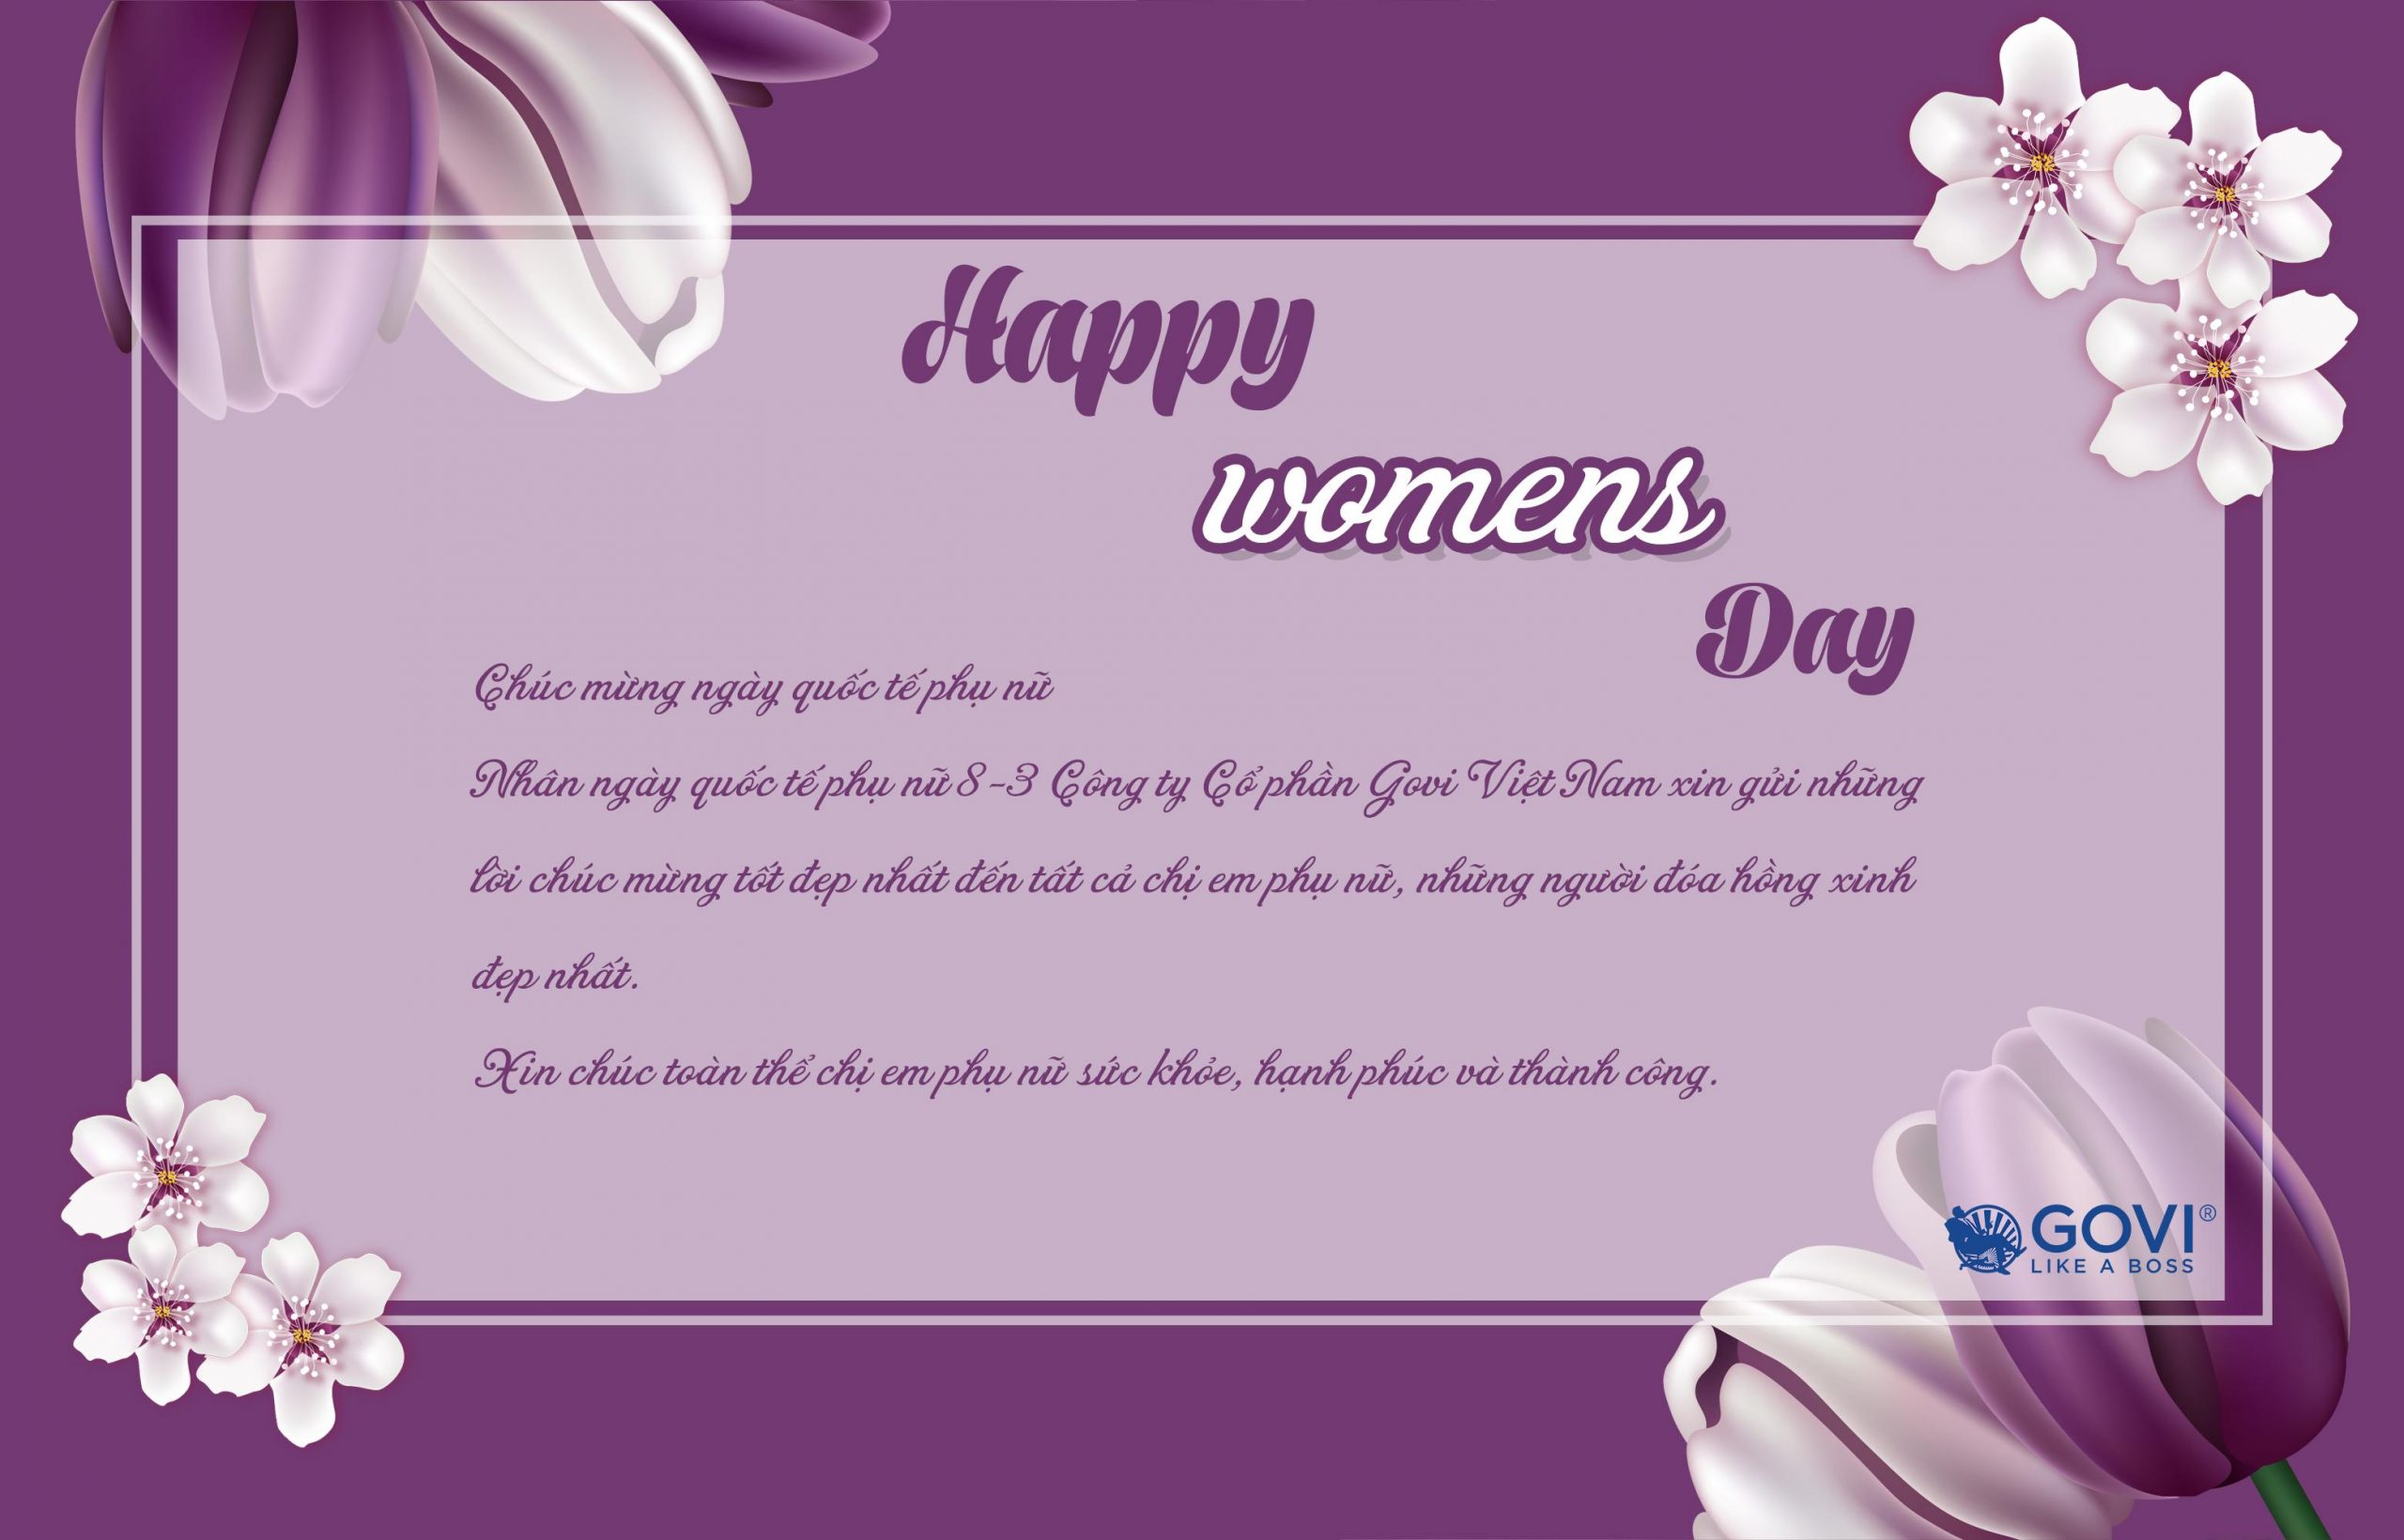 Công ty Cổ phần Govi Việt Nam gửi lời chúc mừng ngày quốc tế phụ nữ 8.3